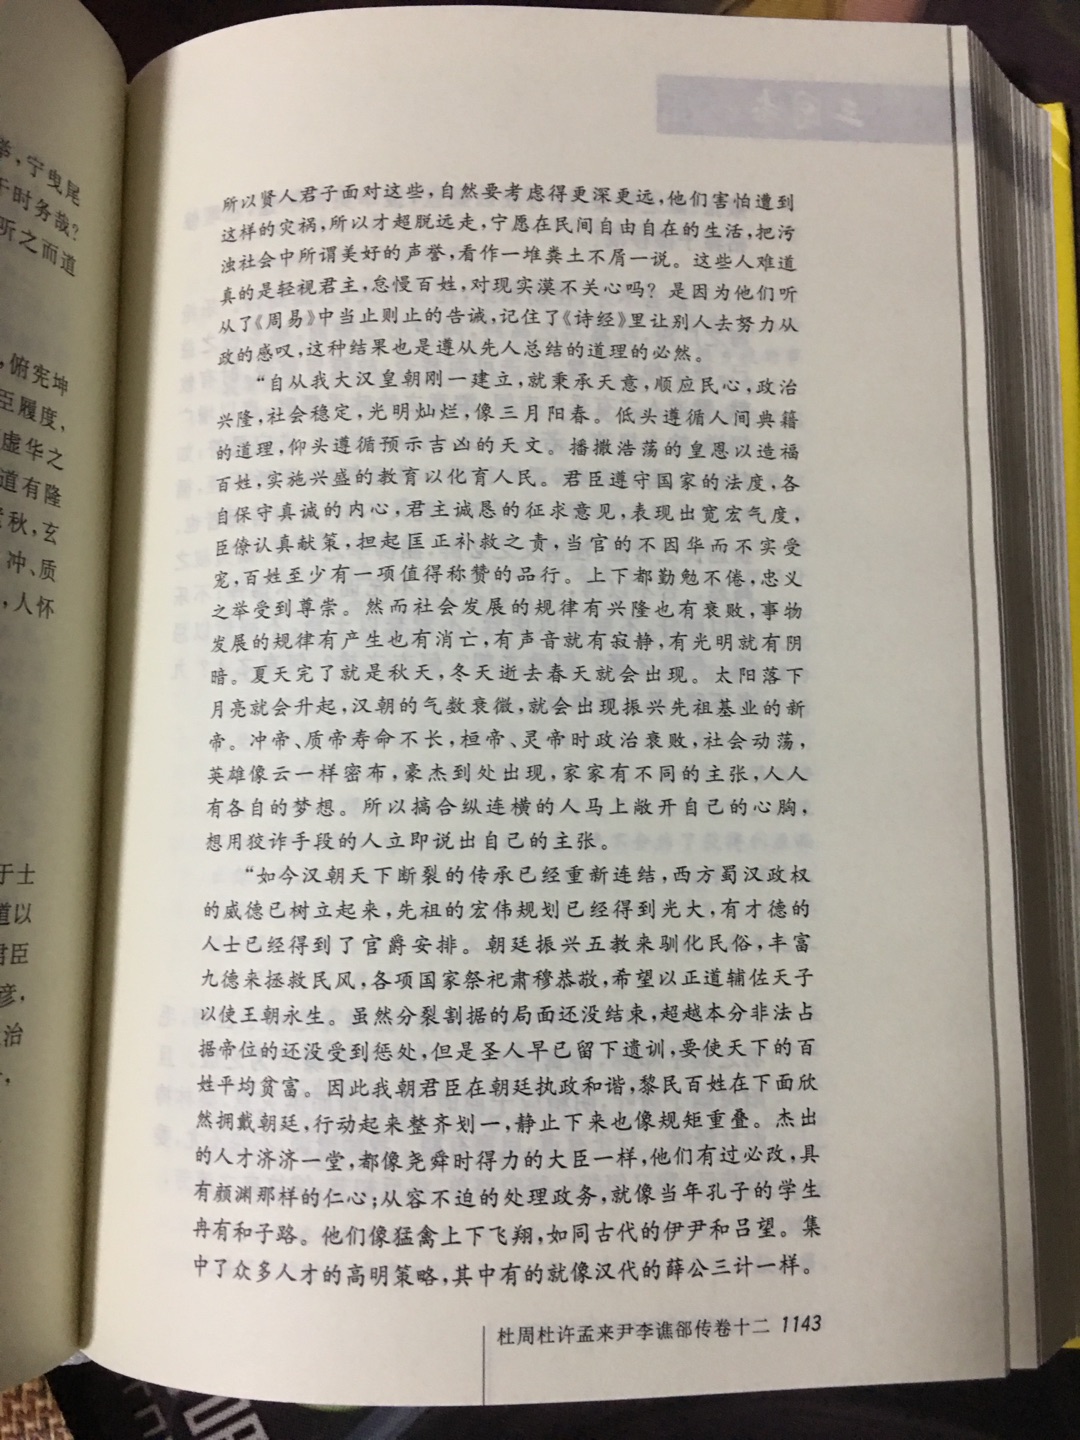 作为一个历史研究生，这个是必看的，中华书局出版质量有保障，期待自己早日看完，少玩手机